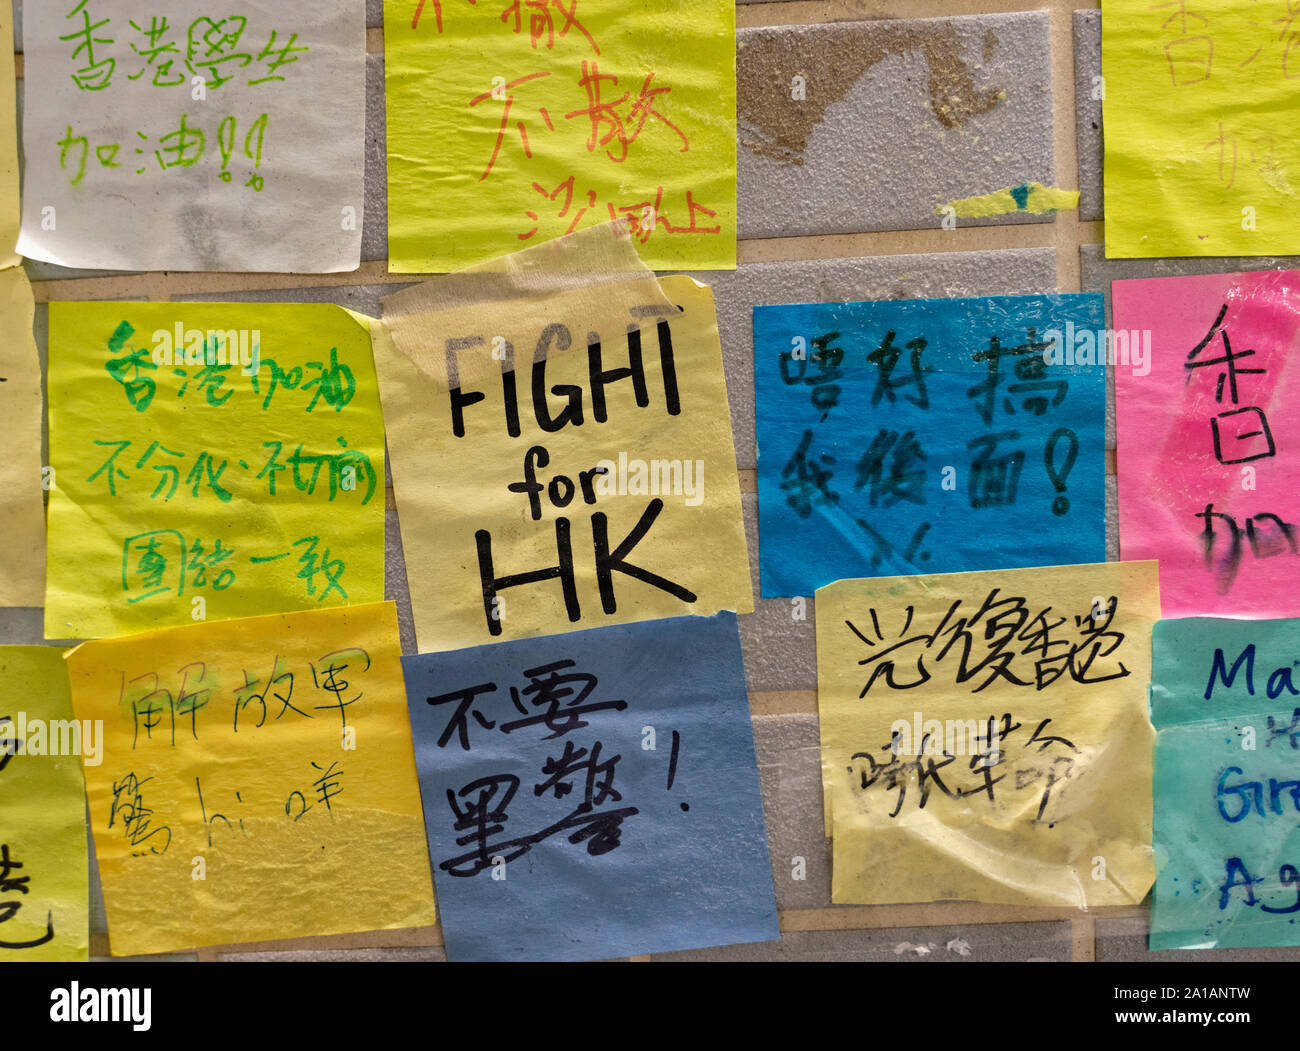 Pro et anti démocratie droit de l'extradition des manifestations, des slogans et des affiches sur les murs de Lennon à Hong Kong. Les murs à pic Lennon Kwai Fong dans de nouveaux territoires. Banque D'Images